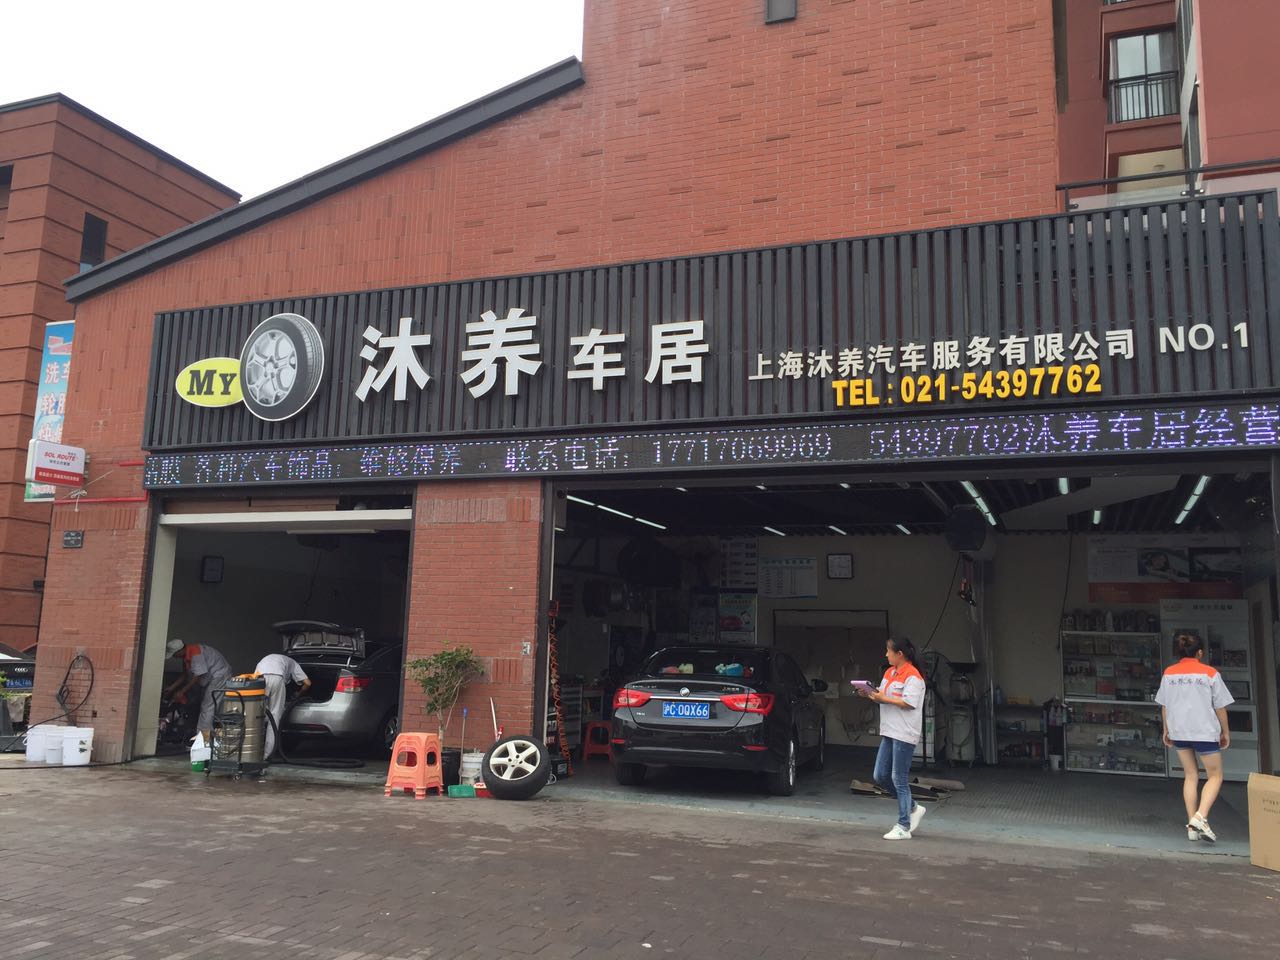 上海沐养汽车服务有限公司